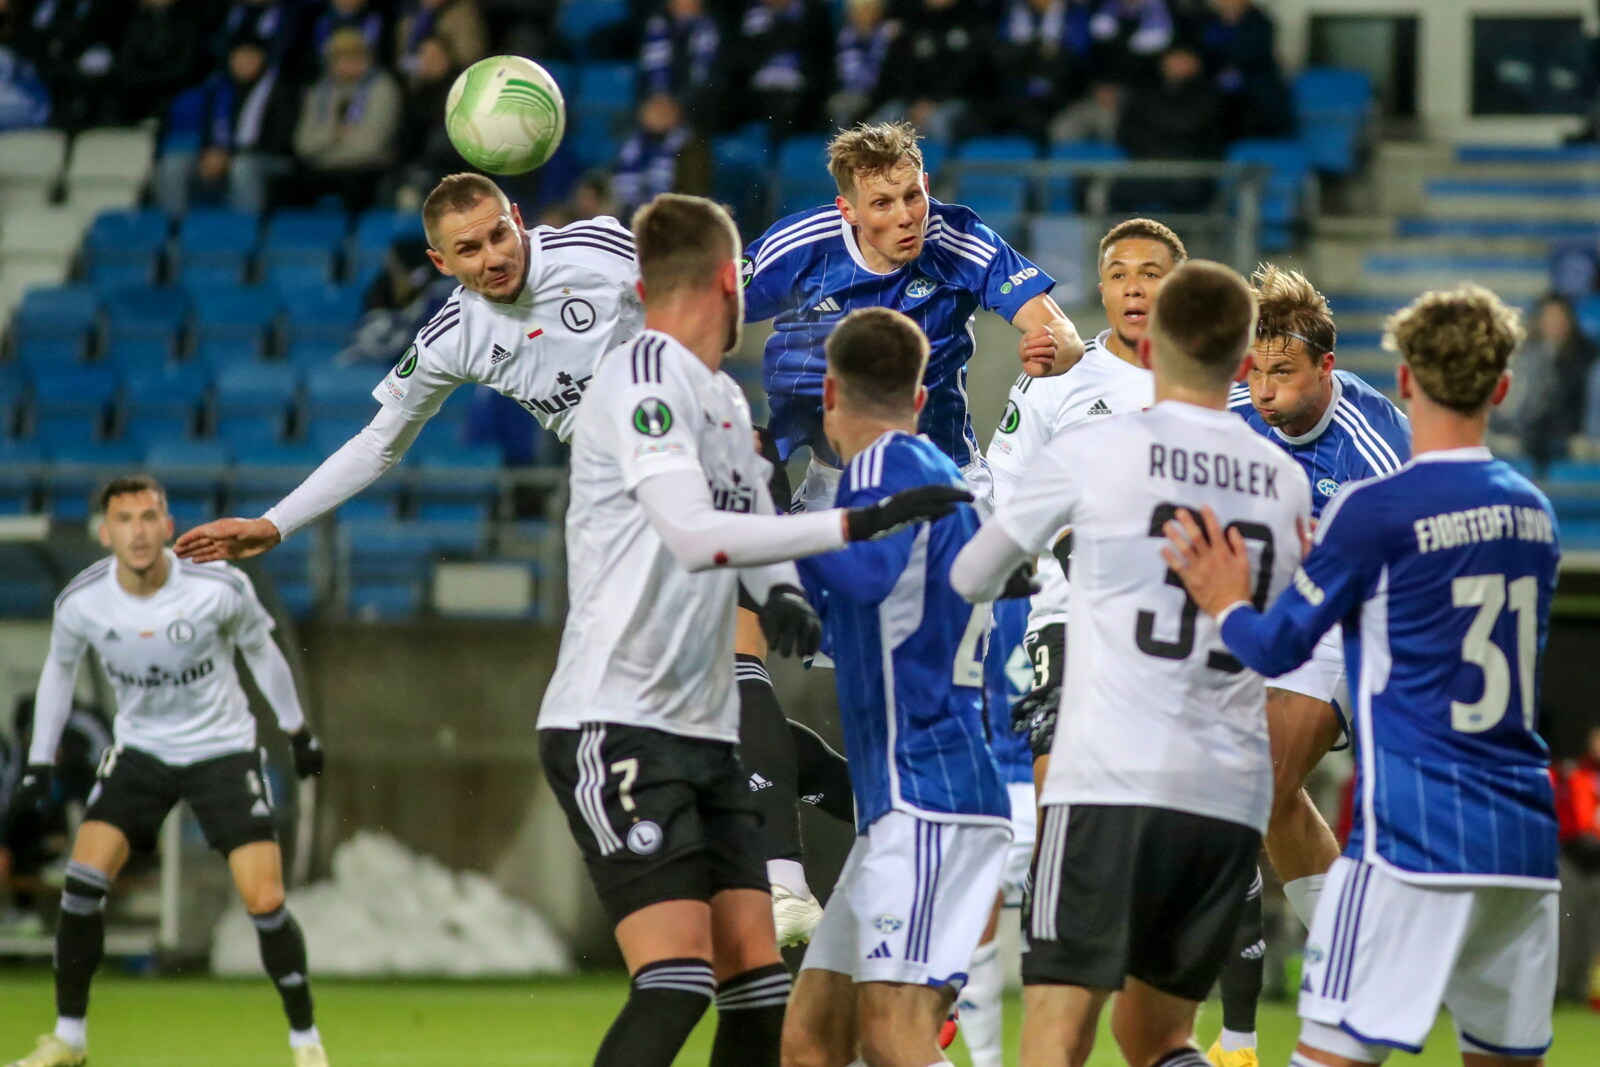 Molde FK - Legia Warszawa 3:2